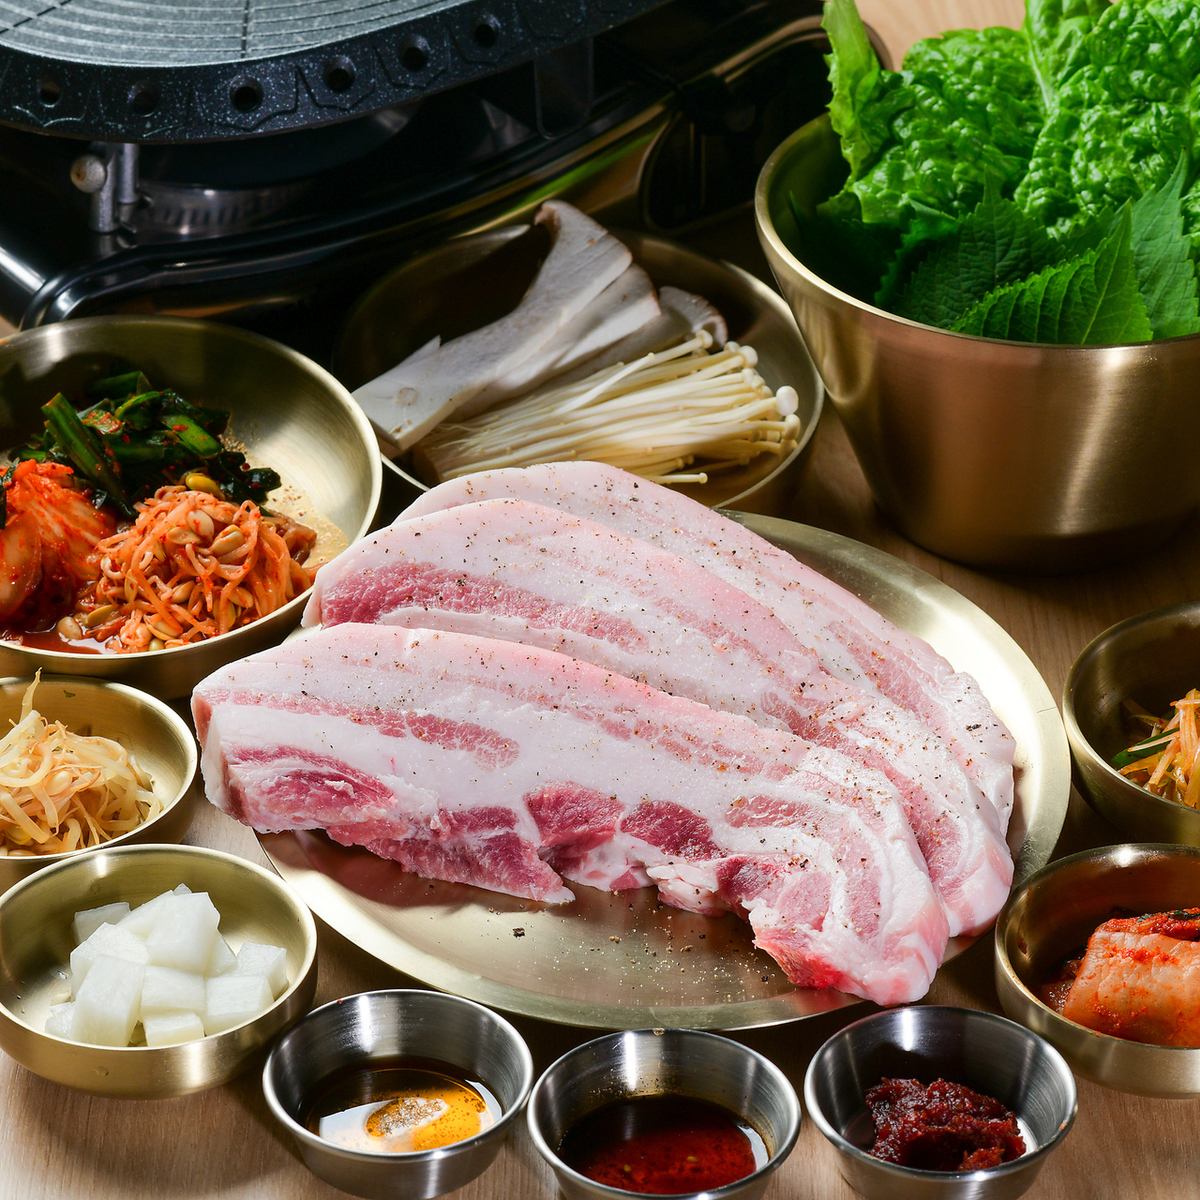 请享用我们严选的名牌猪肉上州麦猪和韩国料理！